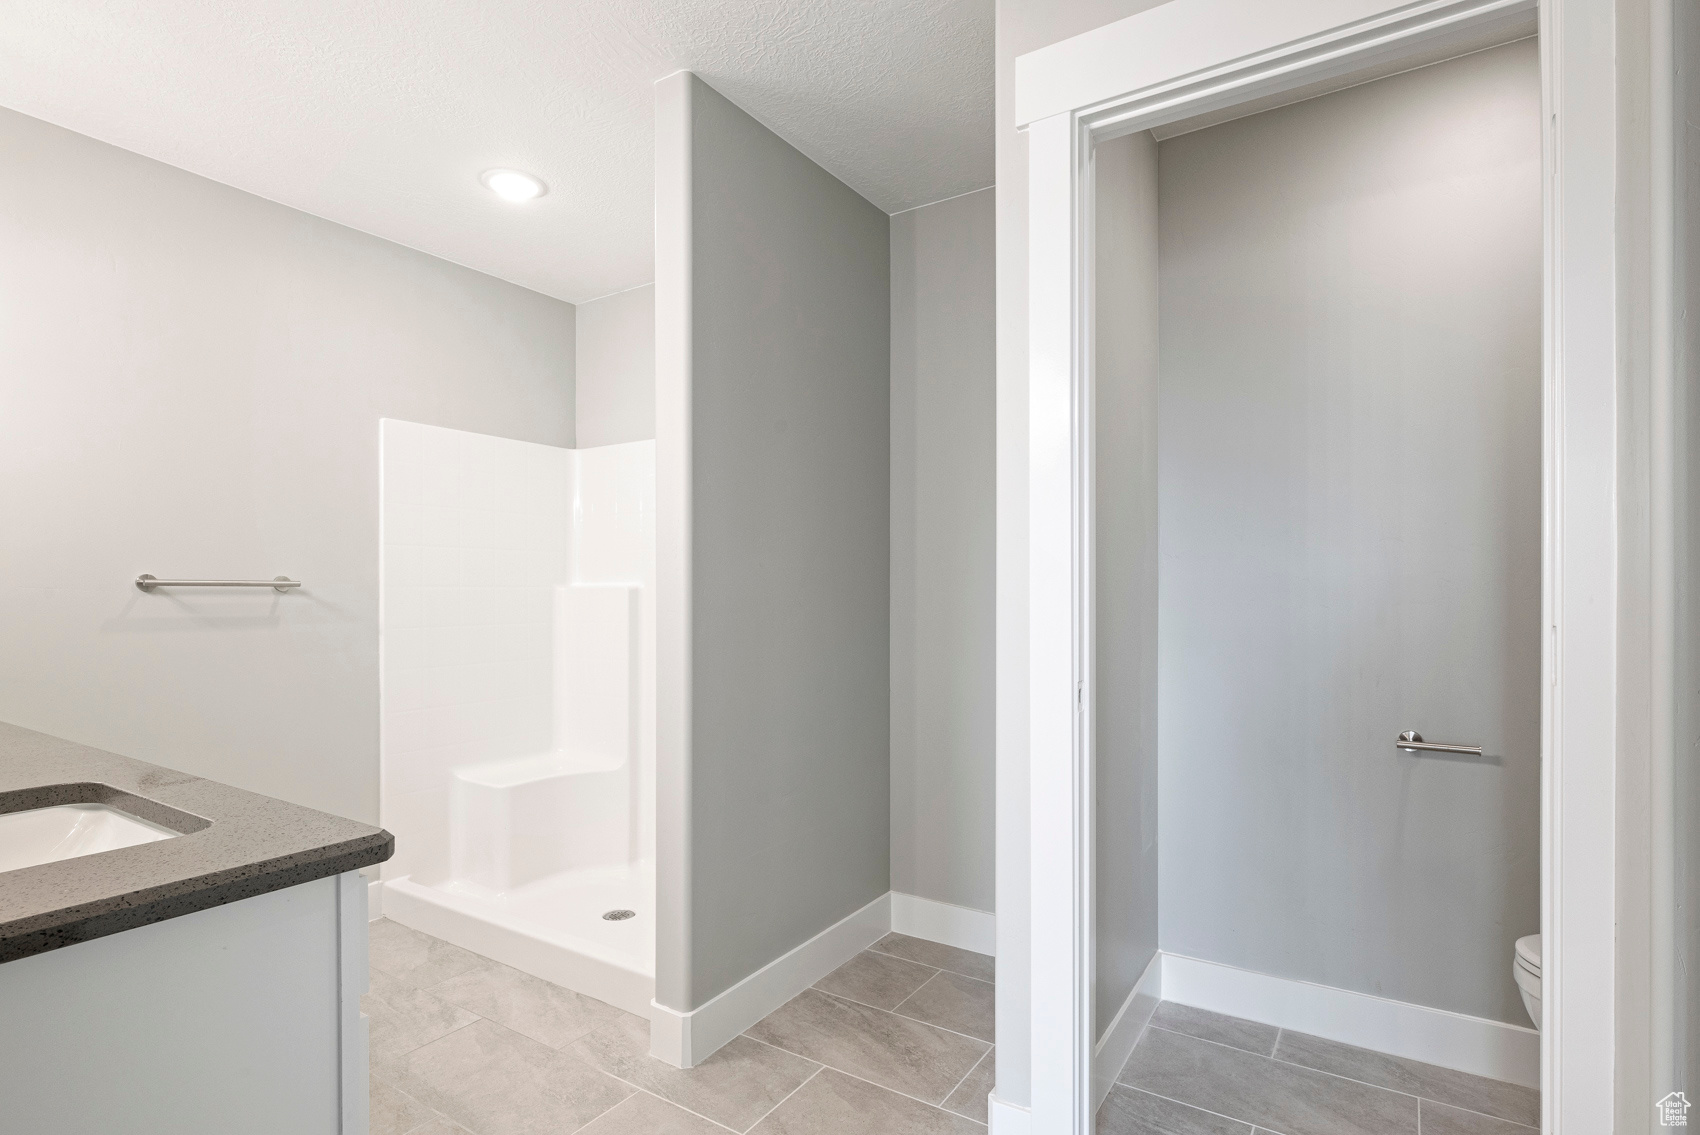 Bathroom featuring tile flooring, walk in shower, vanity, and toilet